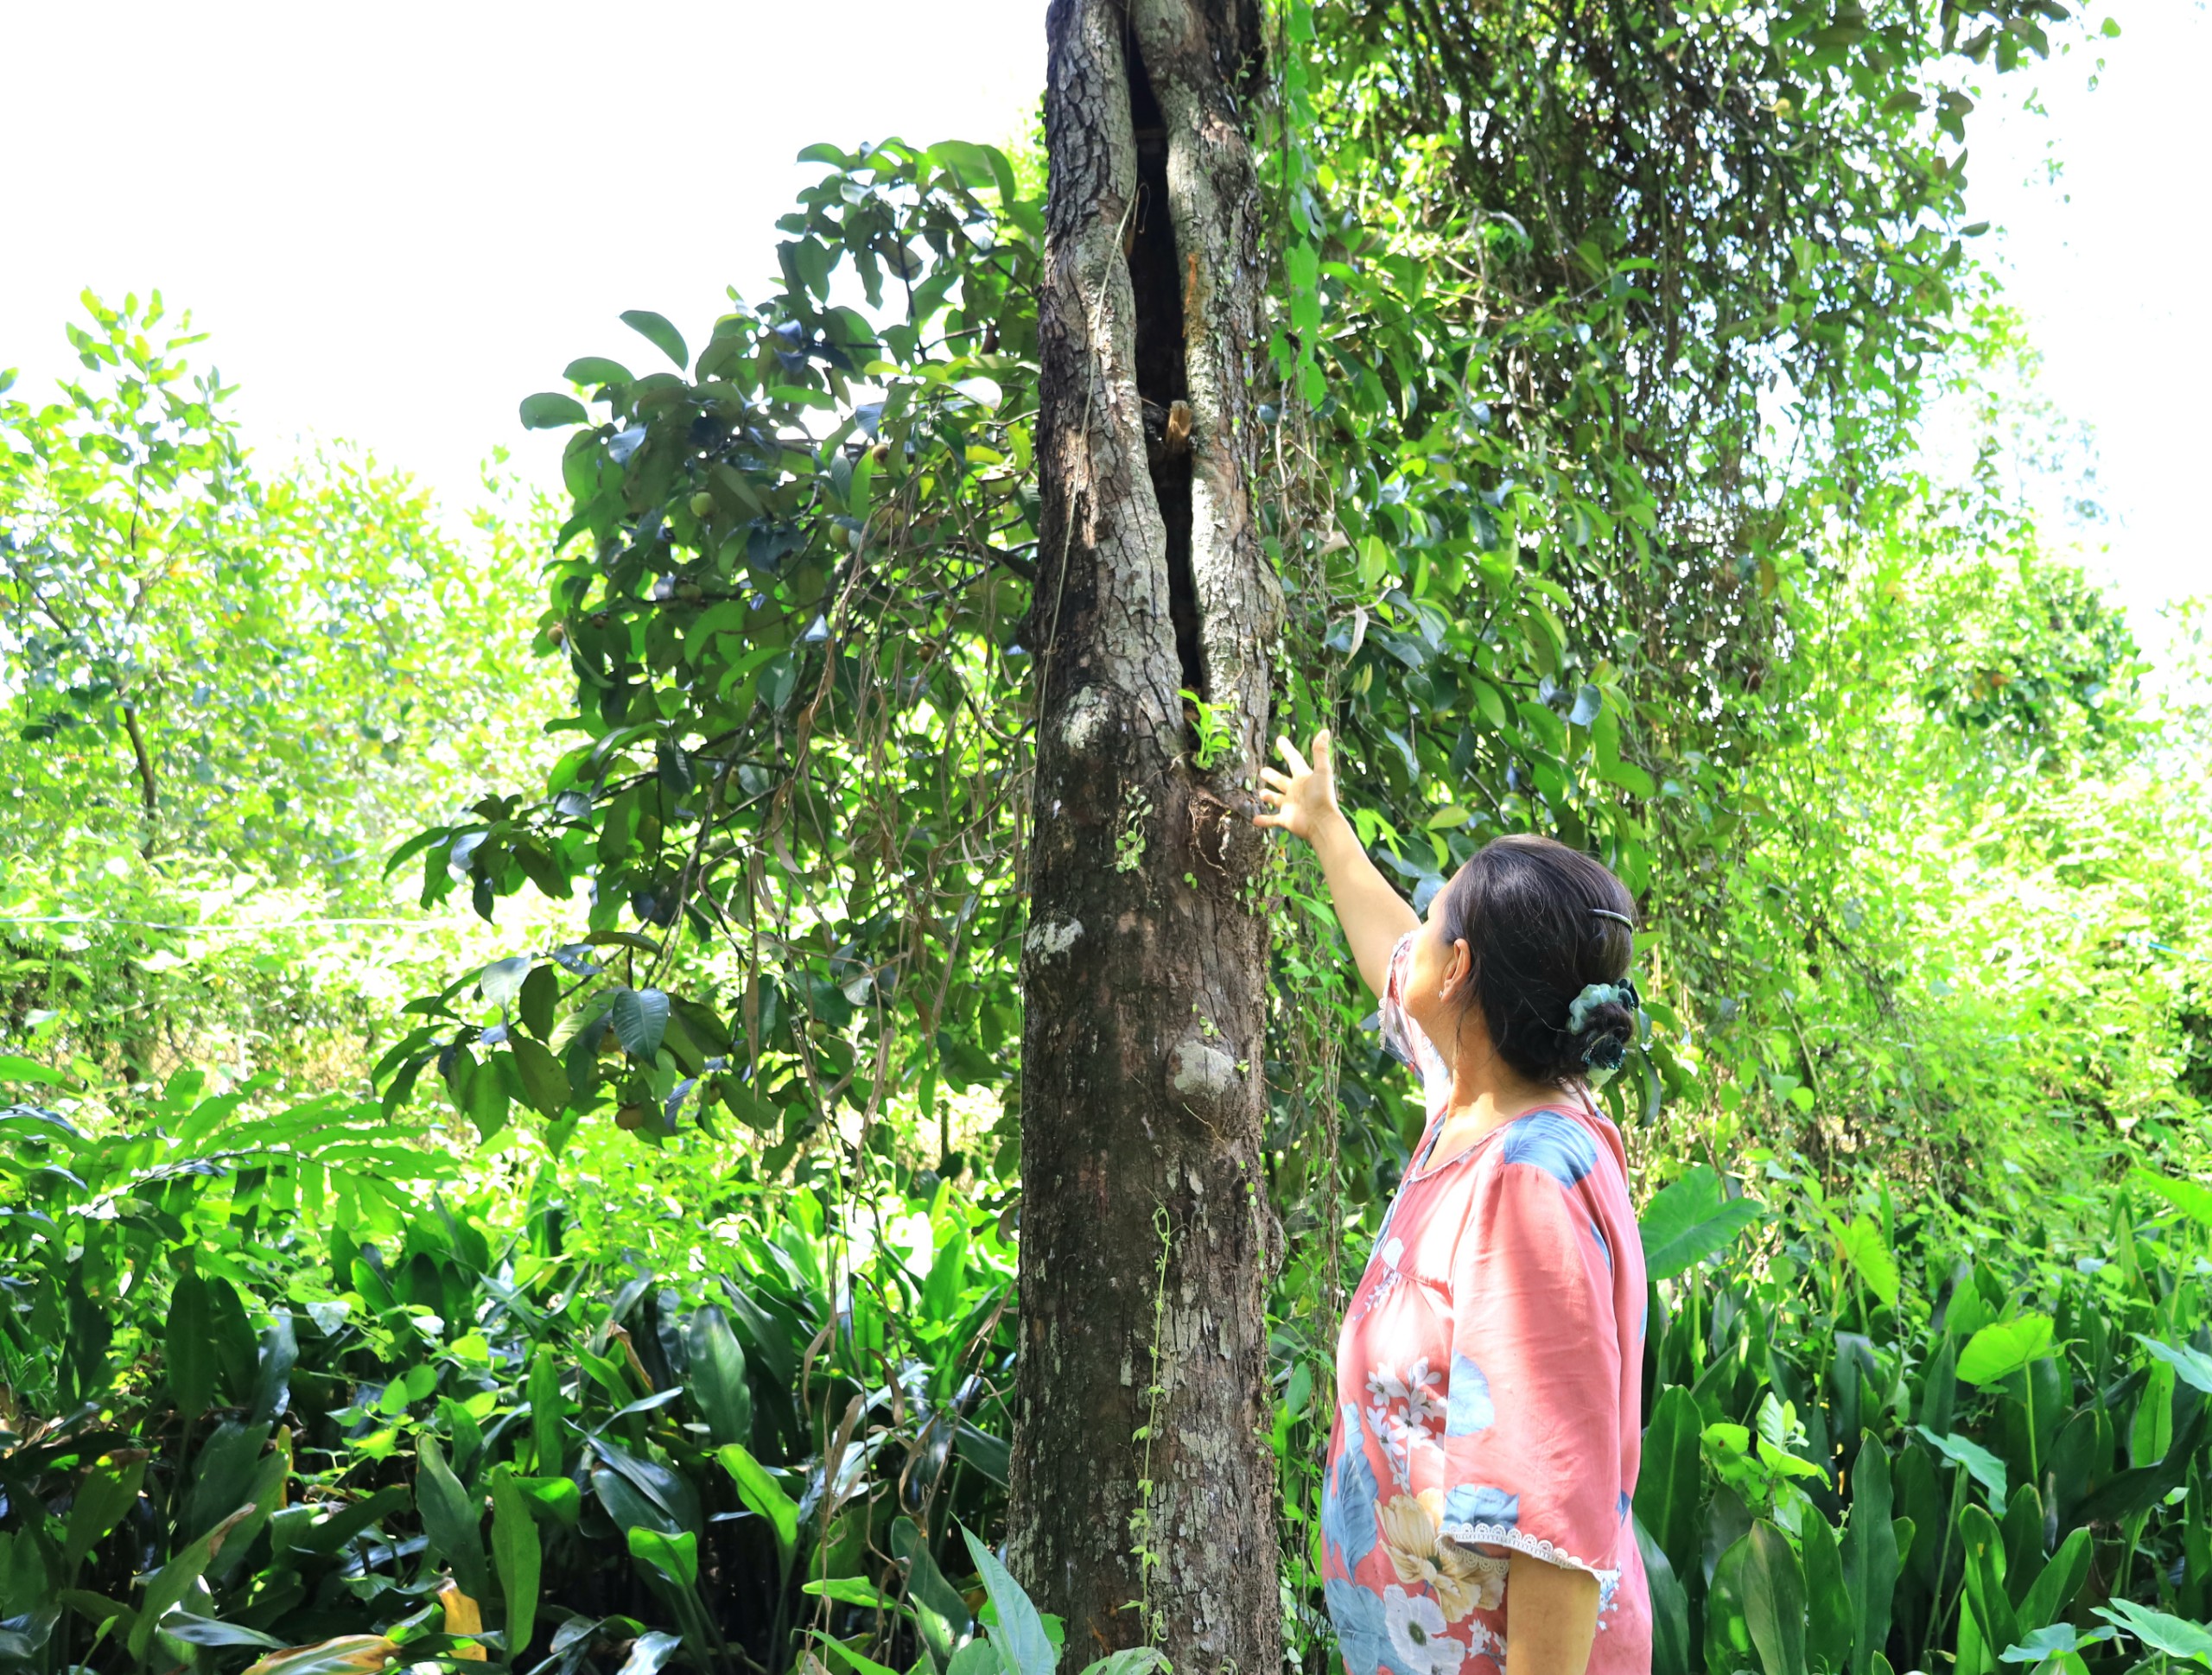 Cô Võ Thị Mai Lan, chủ vườn Măng cụt Lan Dung chỉ những thân cây bị bom rơi đạn lạc trúng, mang vết thương dài khoét rỗng bên trong, mà theo năm tháng, vẫn kiên cường sống cho sai trái mỗi vụ.